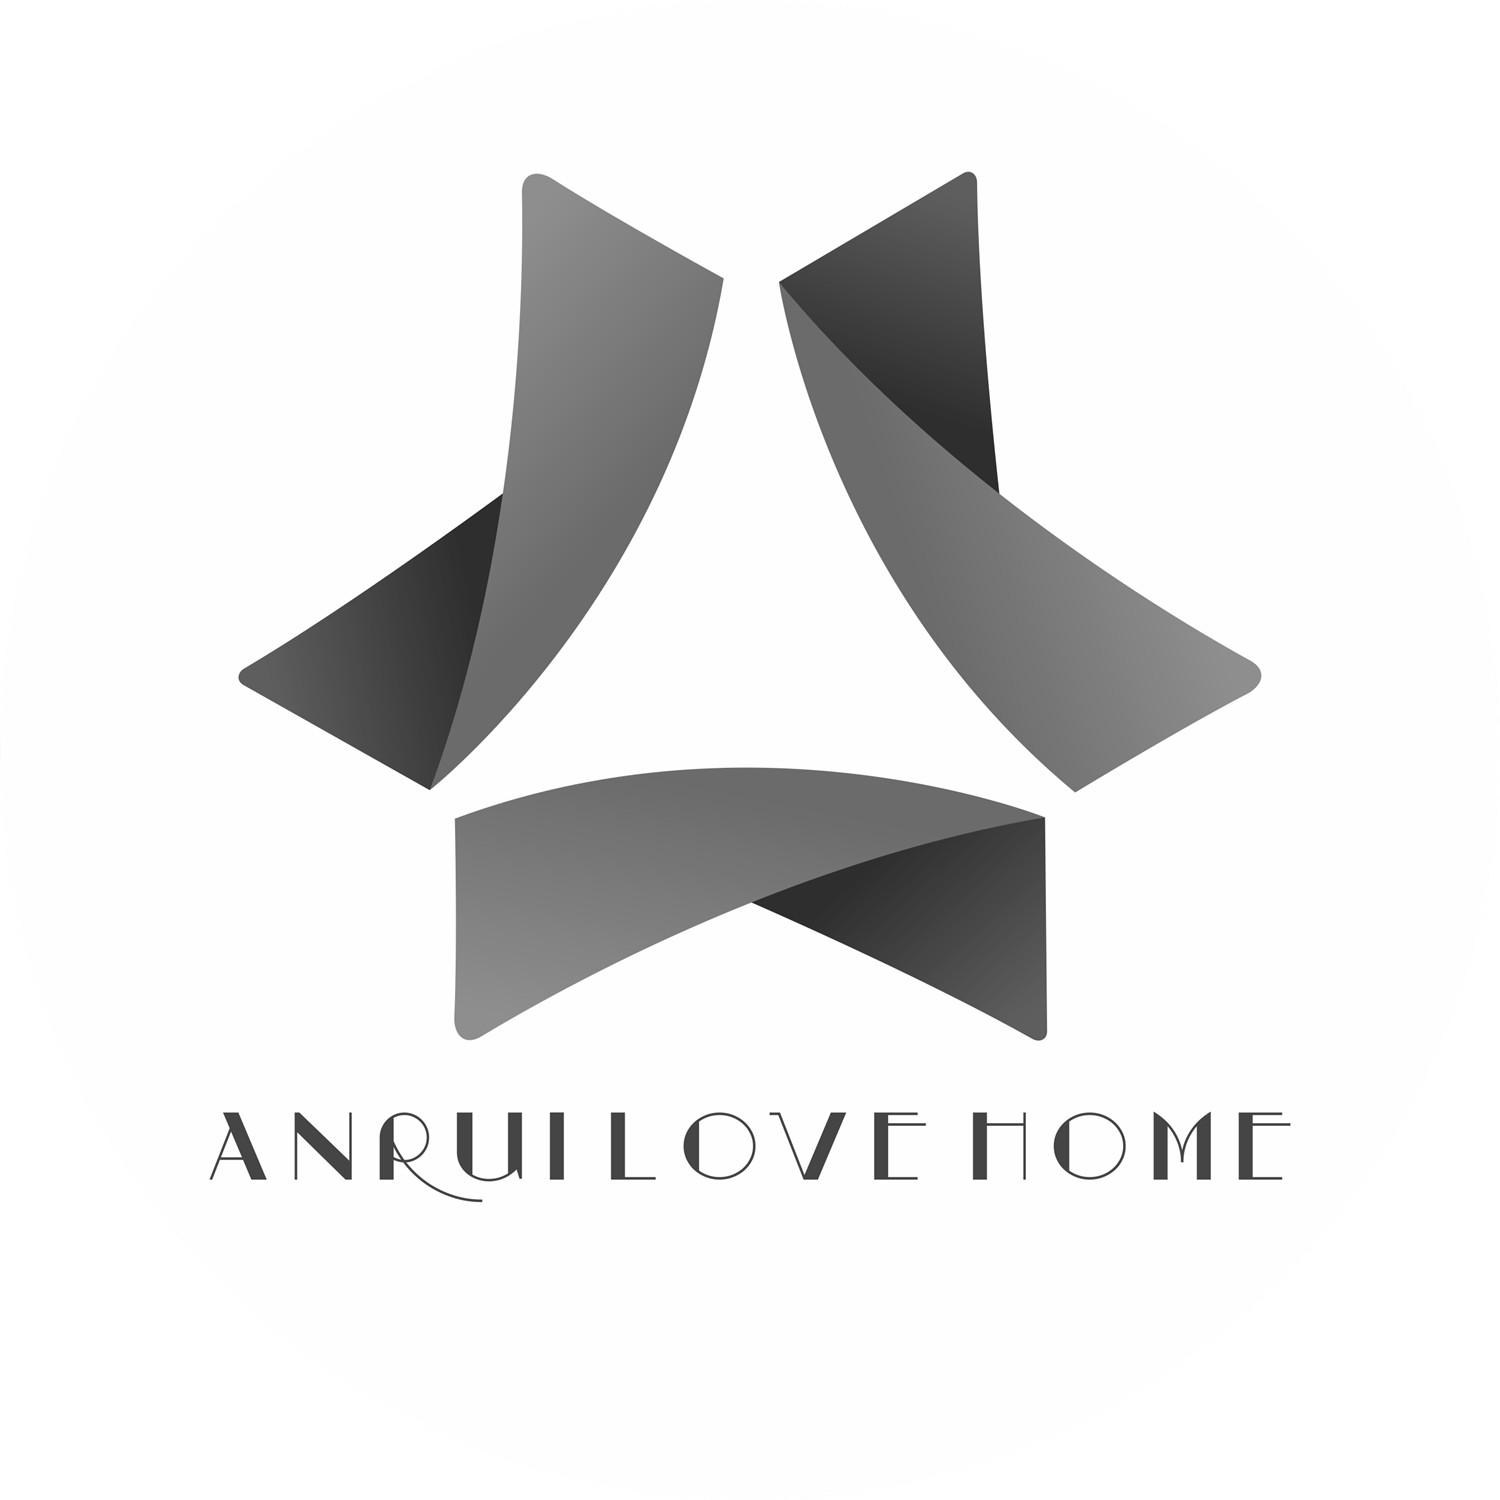 ANRUI LOVE HOME